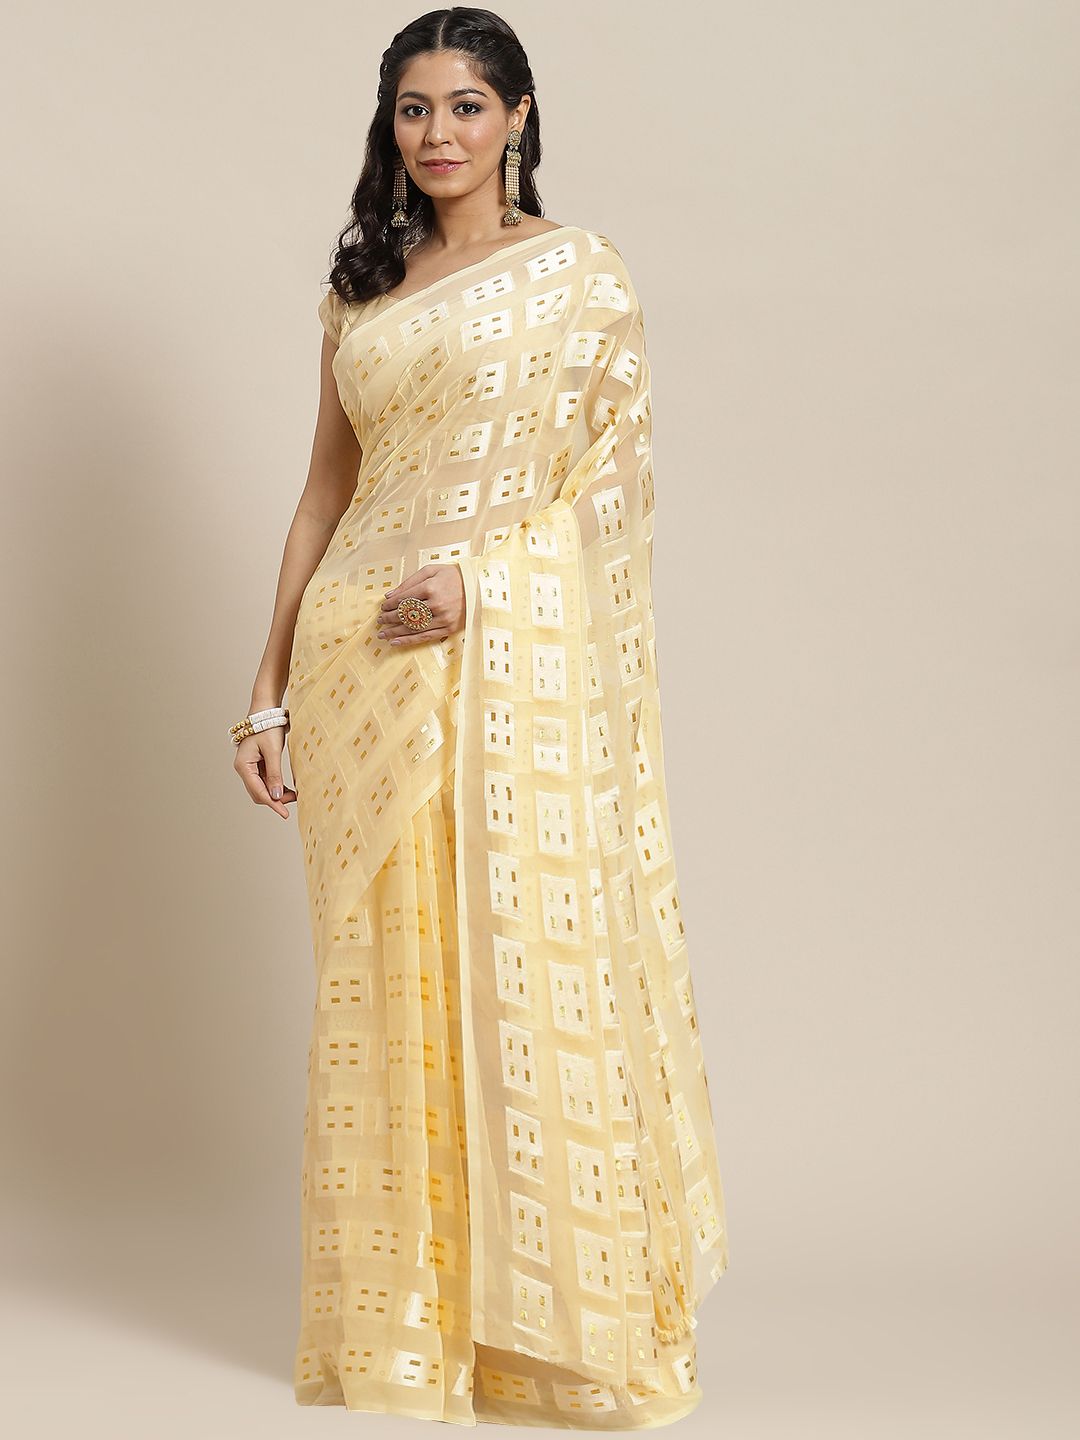 Ishin Cream-Coloured & Golden Woven Design Poly Georgette Saree Price in India